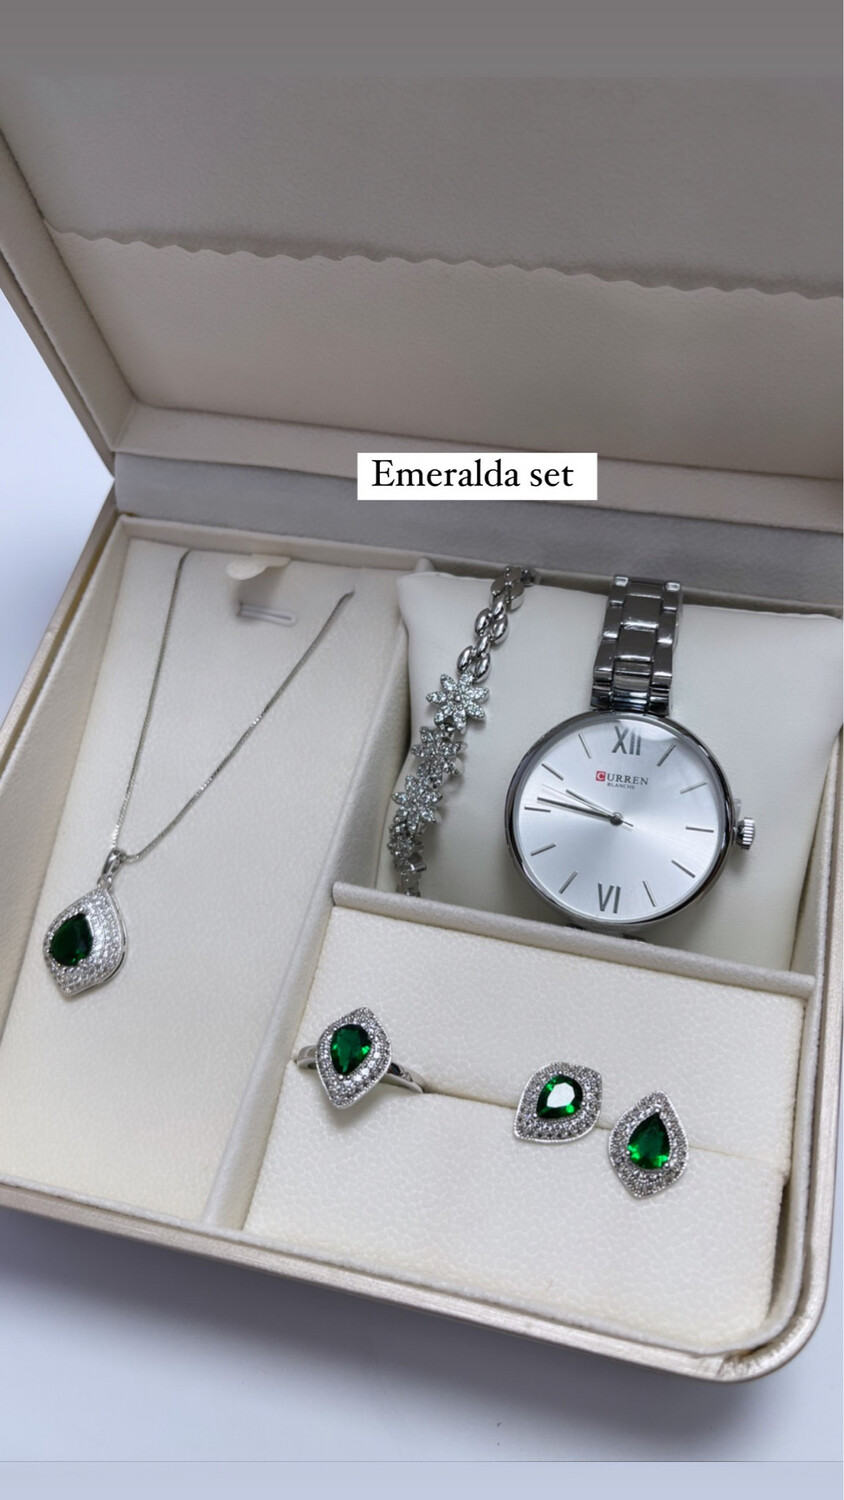 Emeralda Gift Set